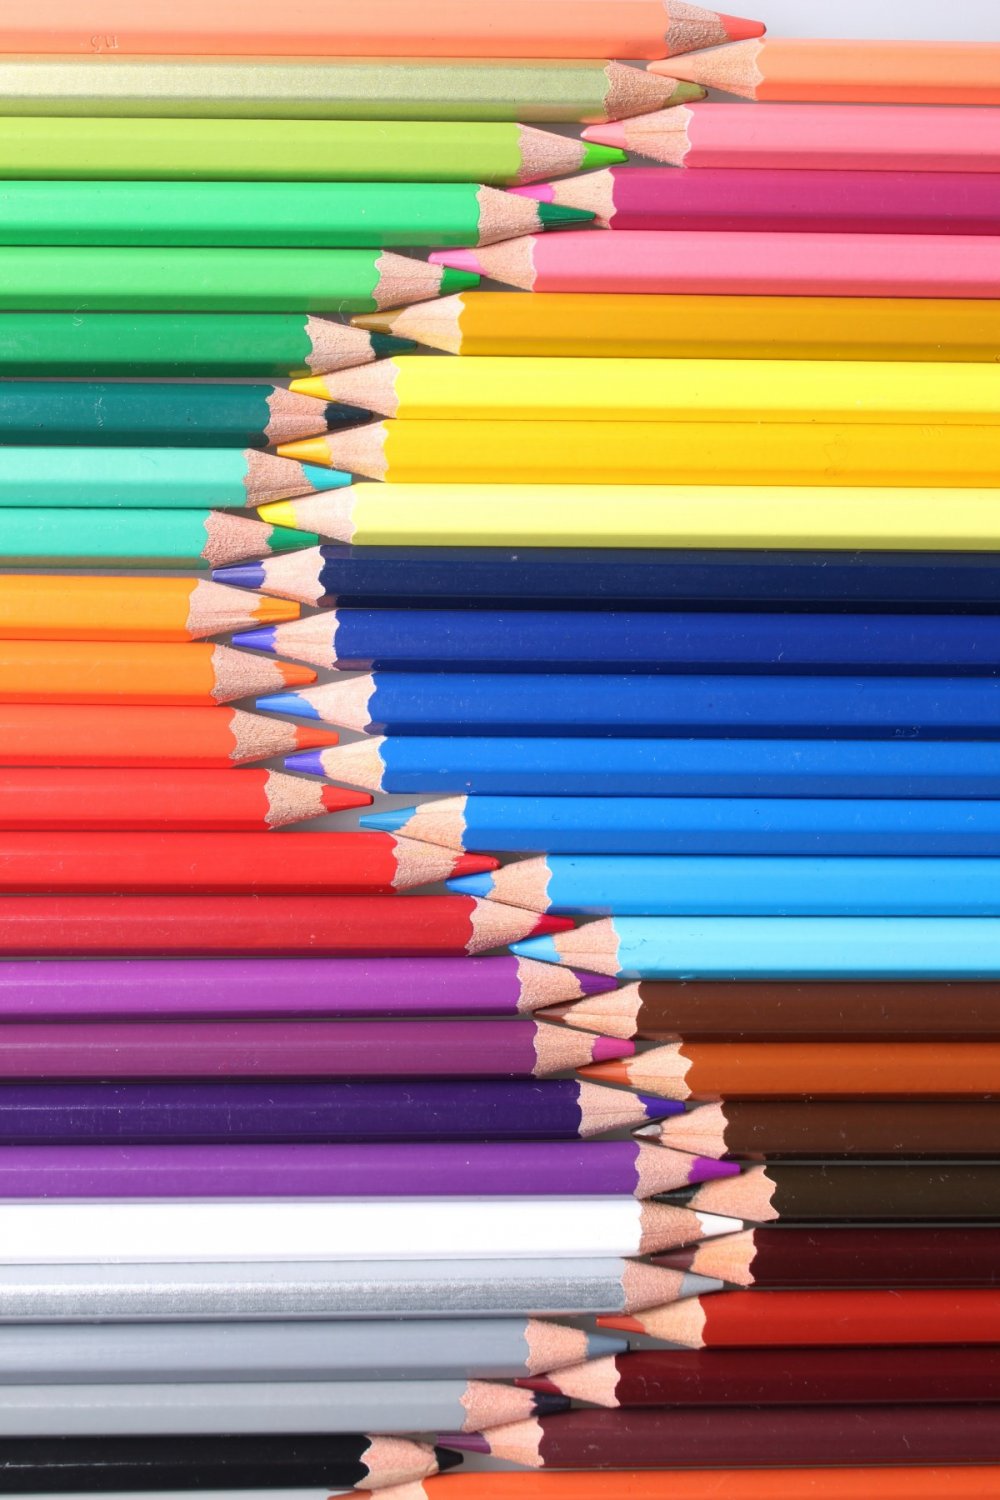 Цветные карандаши на черном фоне